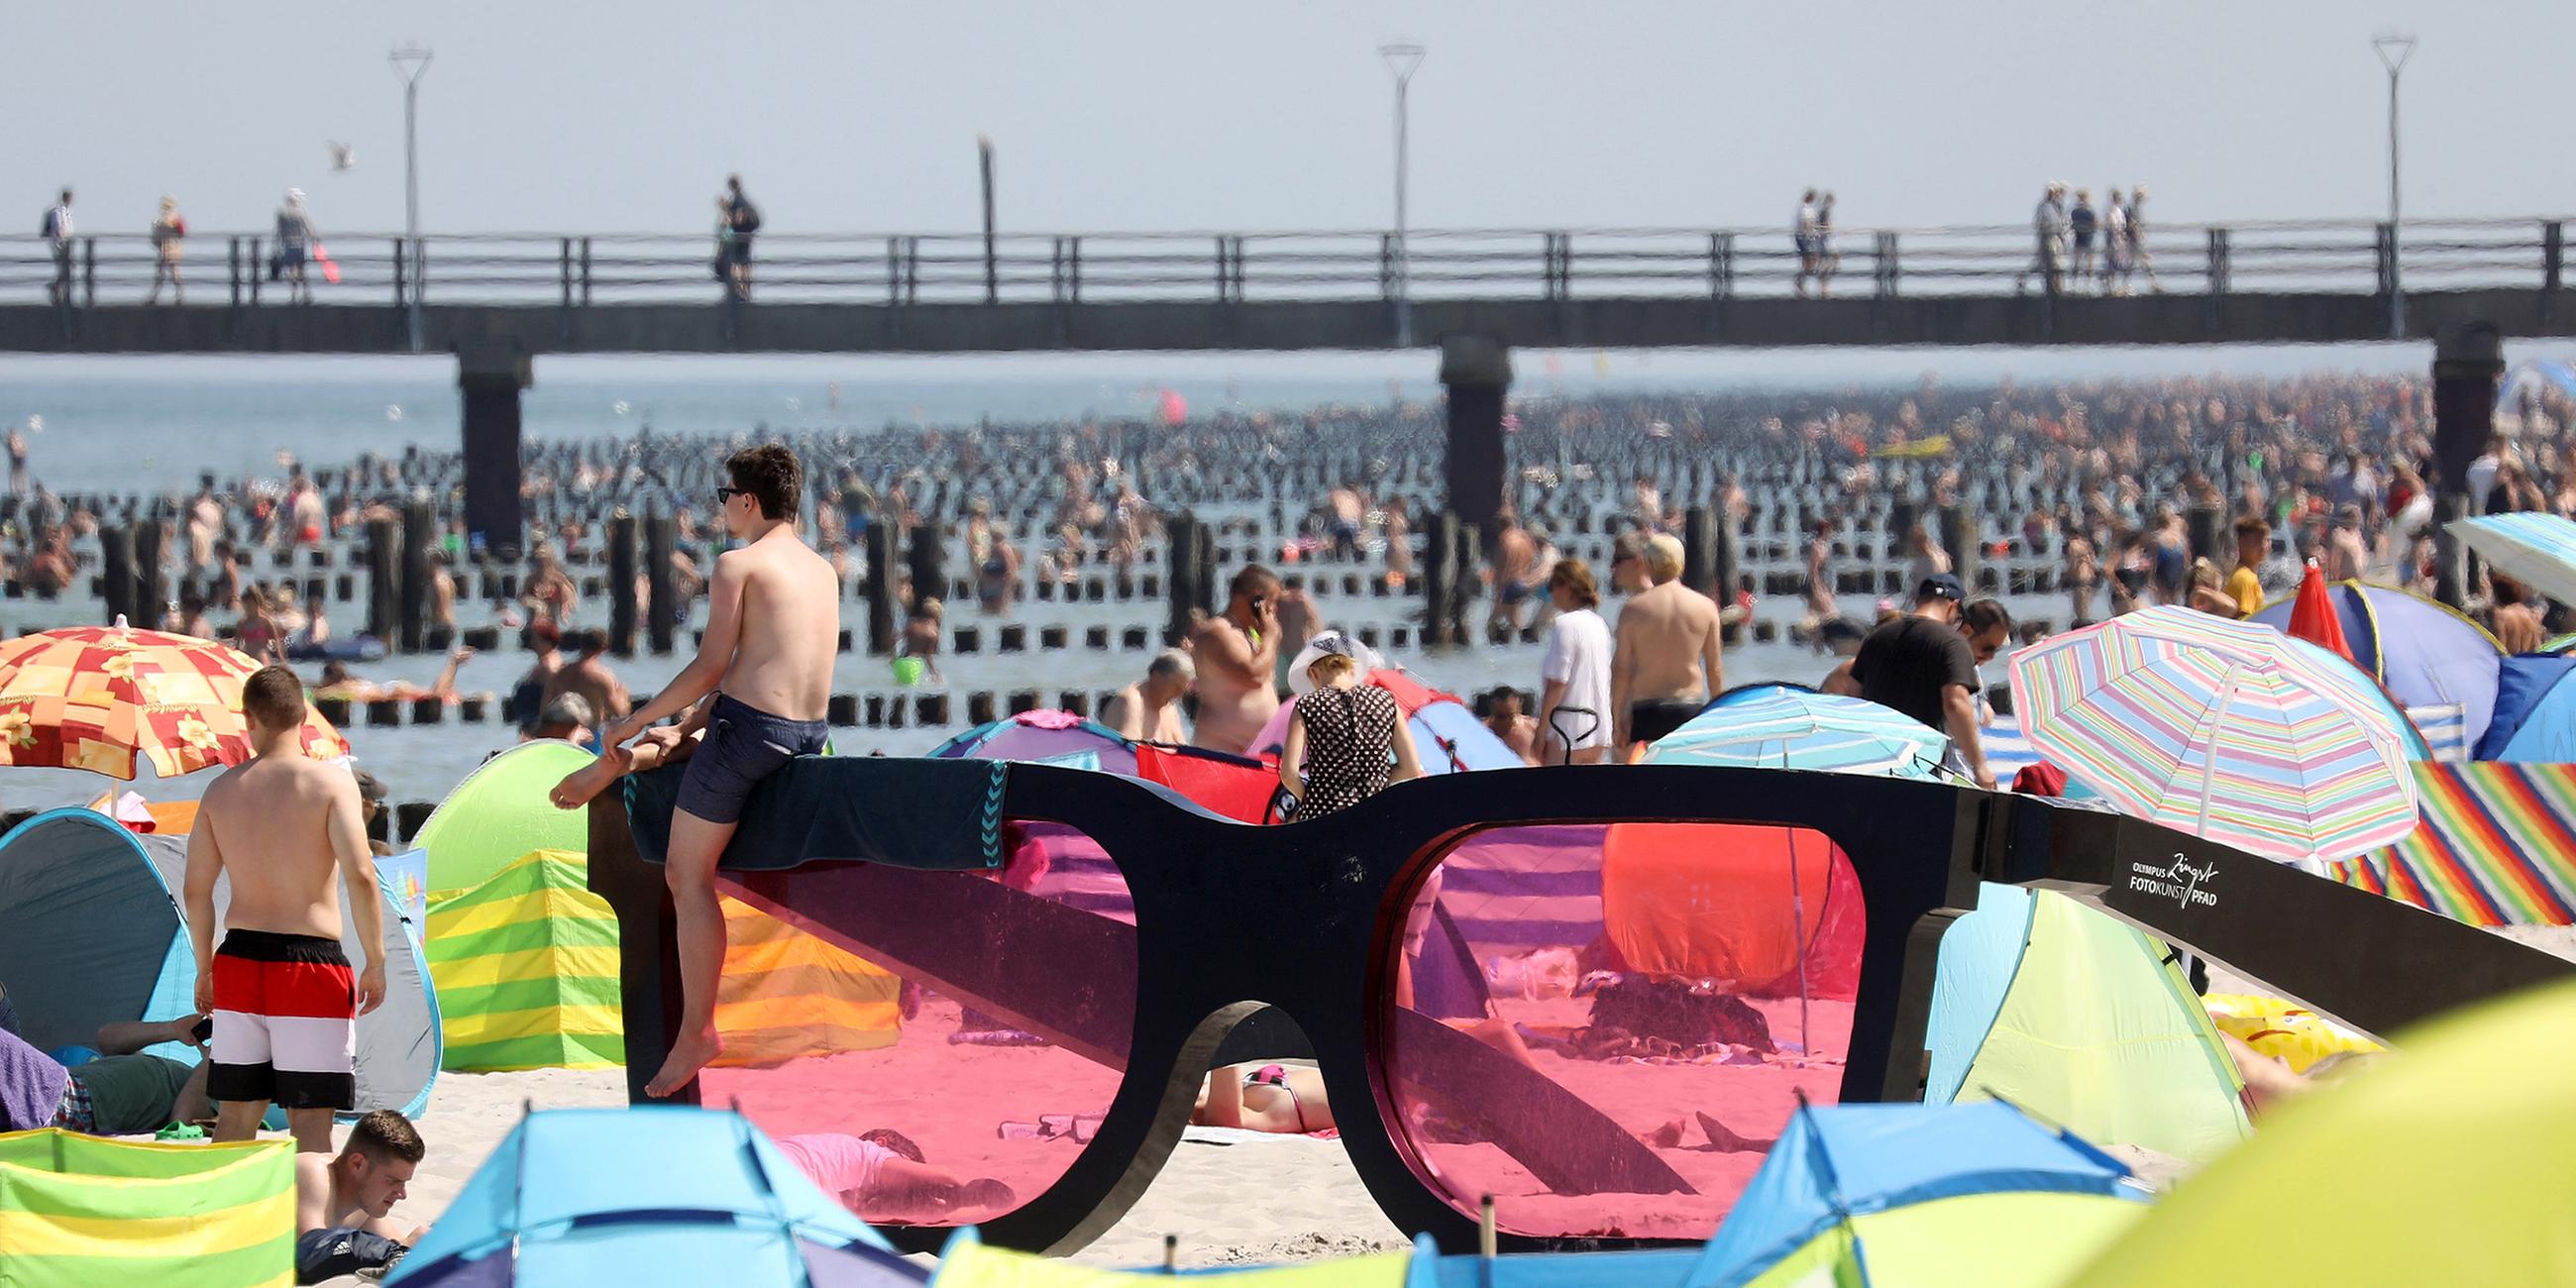 Badegäste liegen am Strand rund um eine große rosarote Brille, am 24.07.2019 in Zingst.